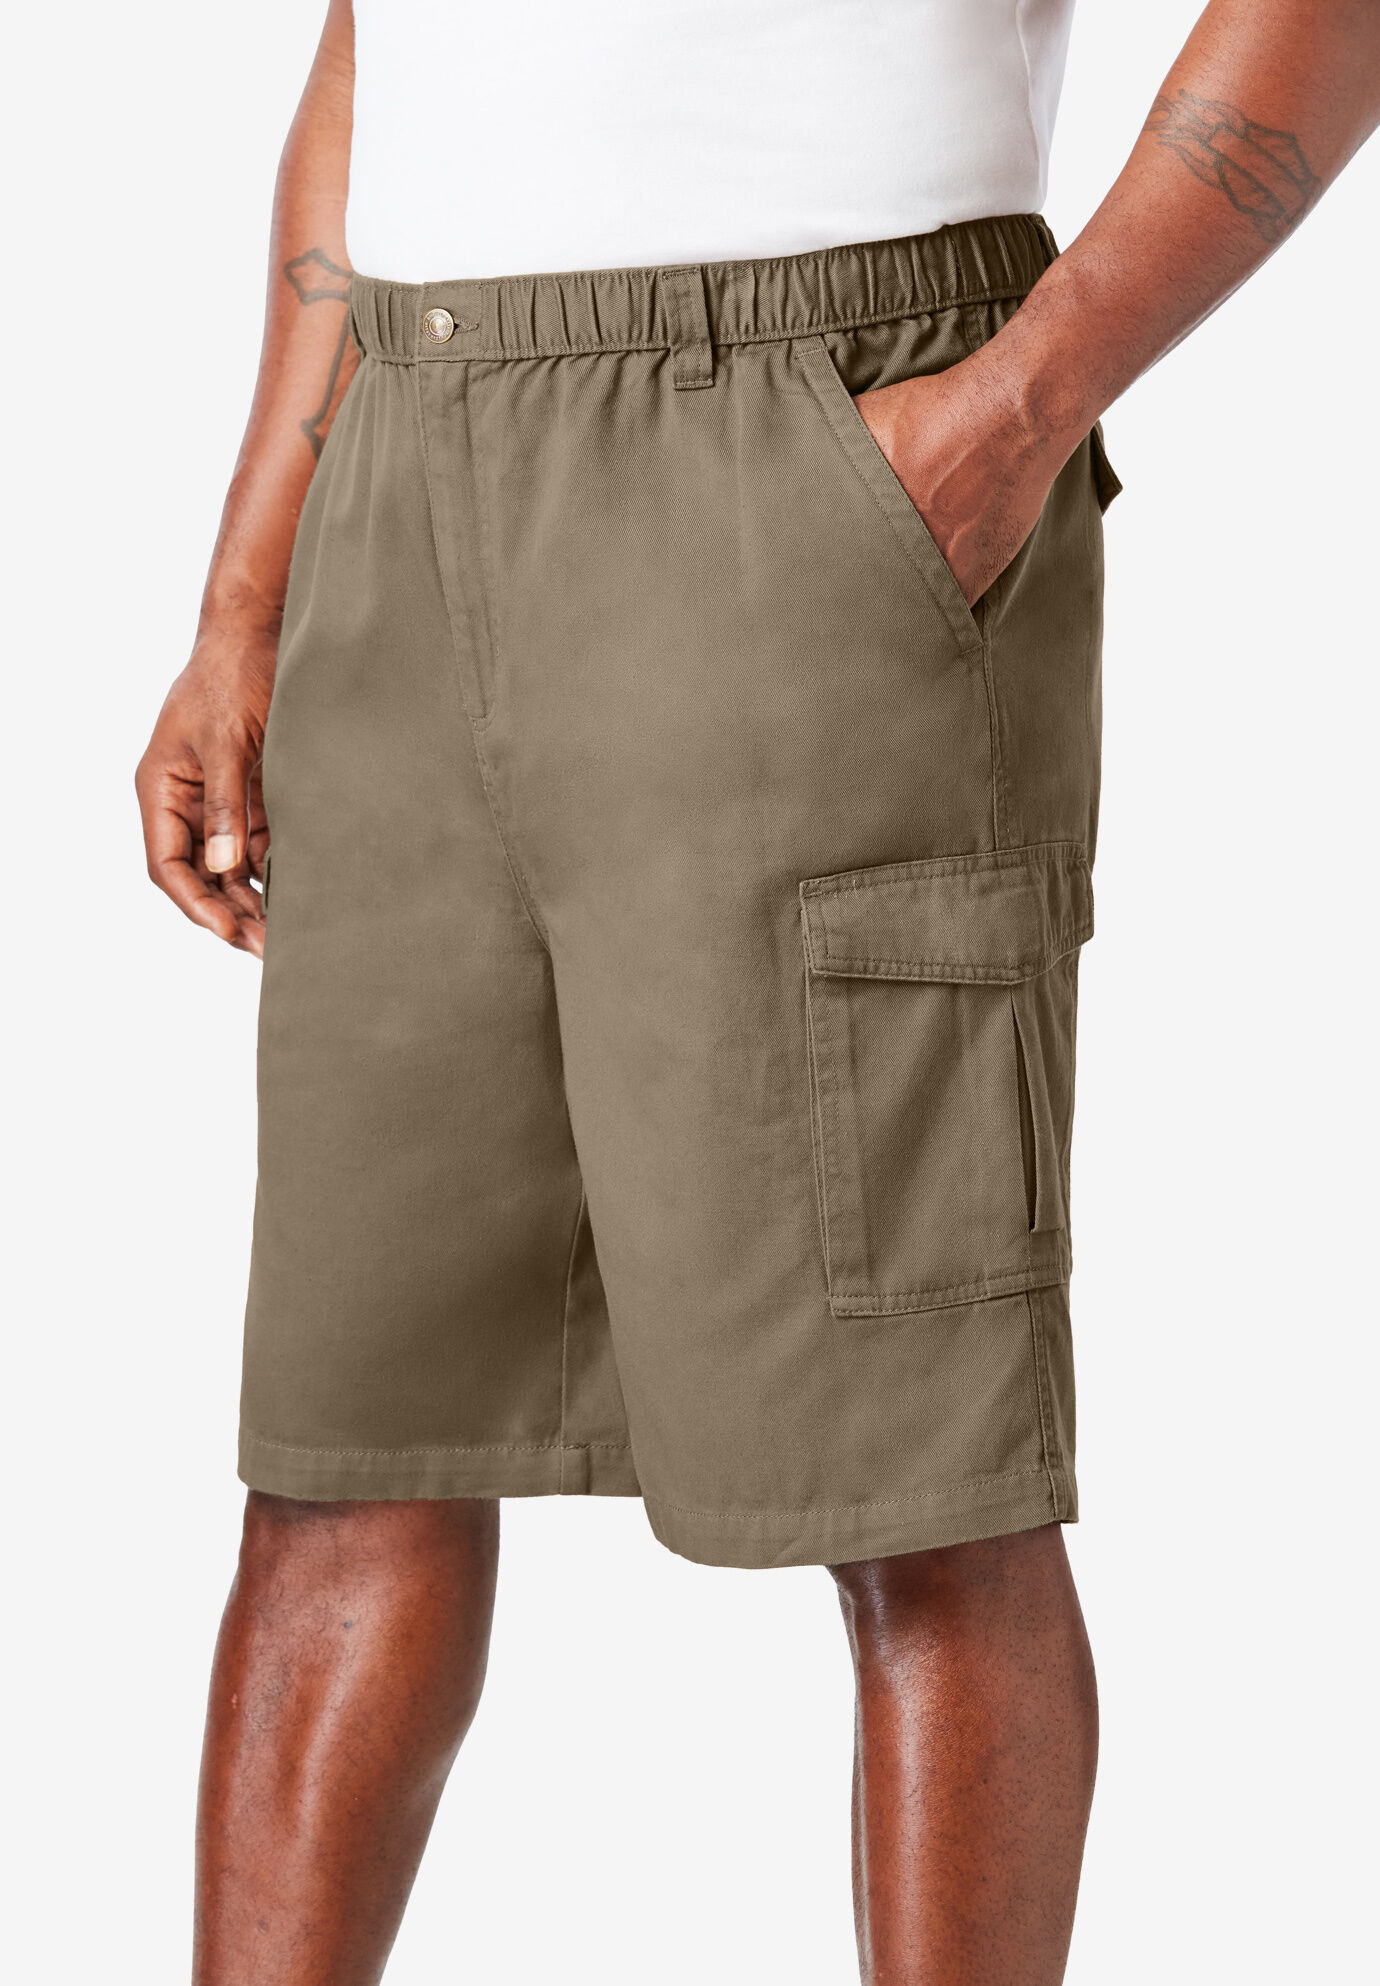 king size cargo shorts